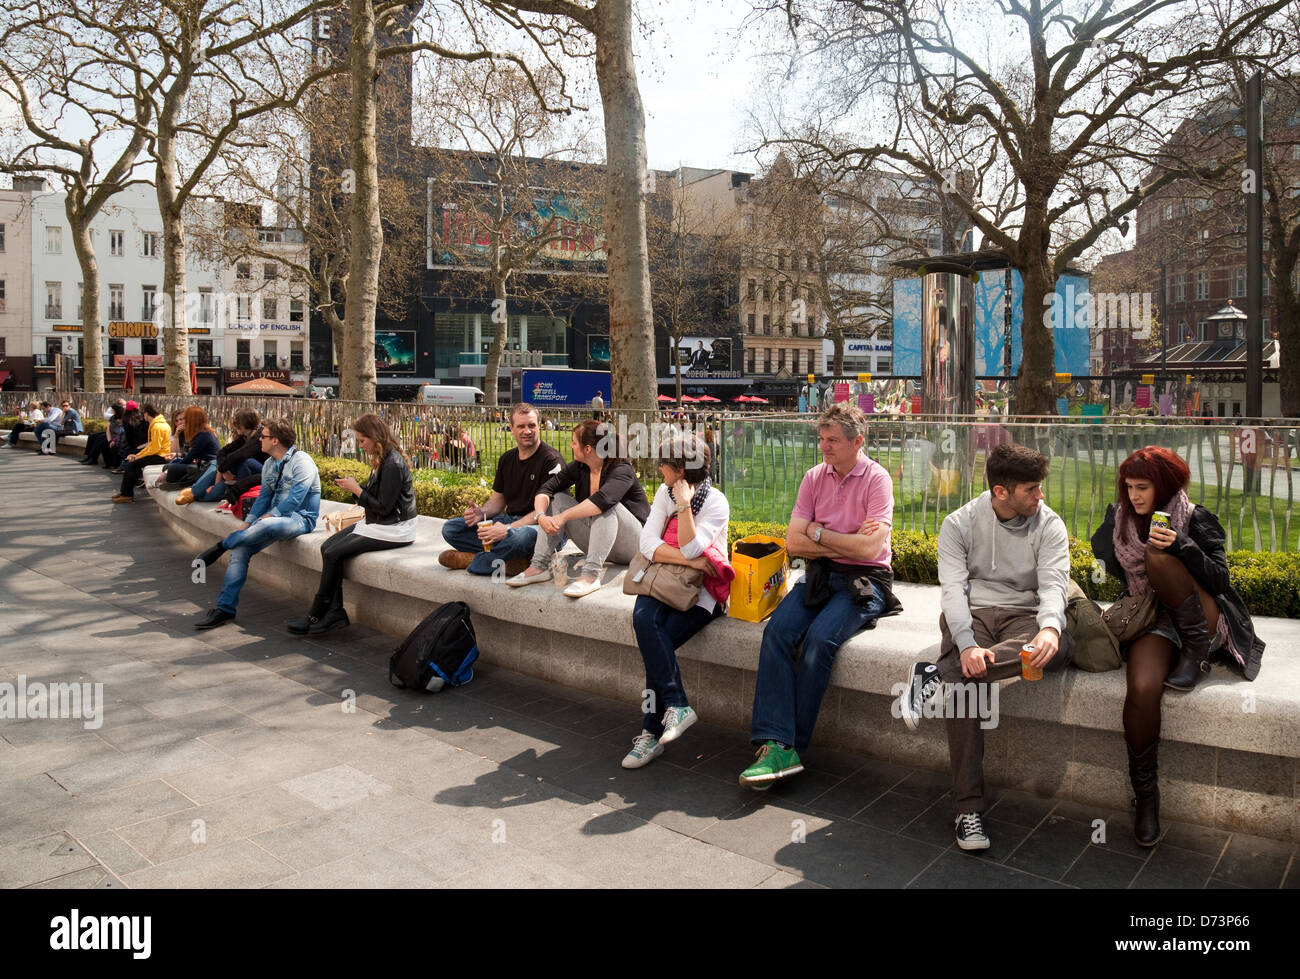 Personas sentadas disfrutando del sol en la primavera, Leicester Square, Londres WC2, REINO UNIDO Foto de stock